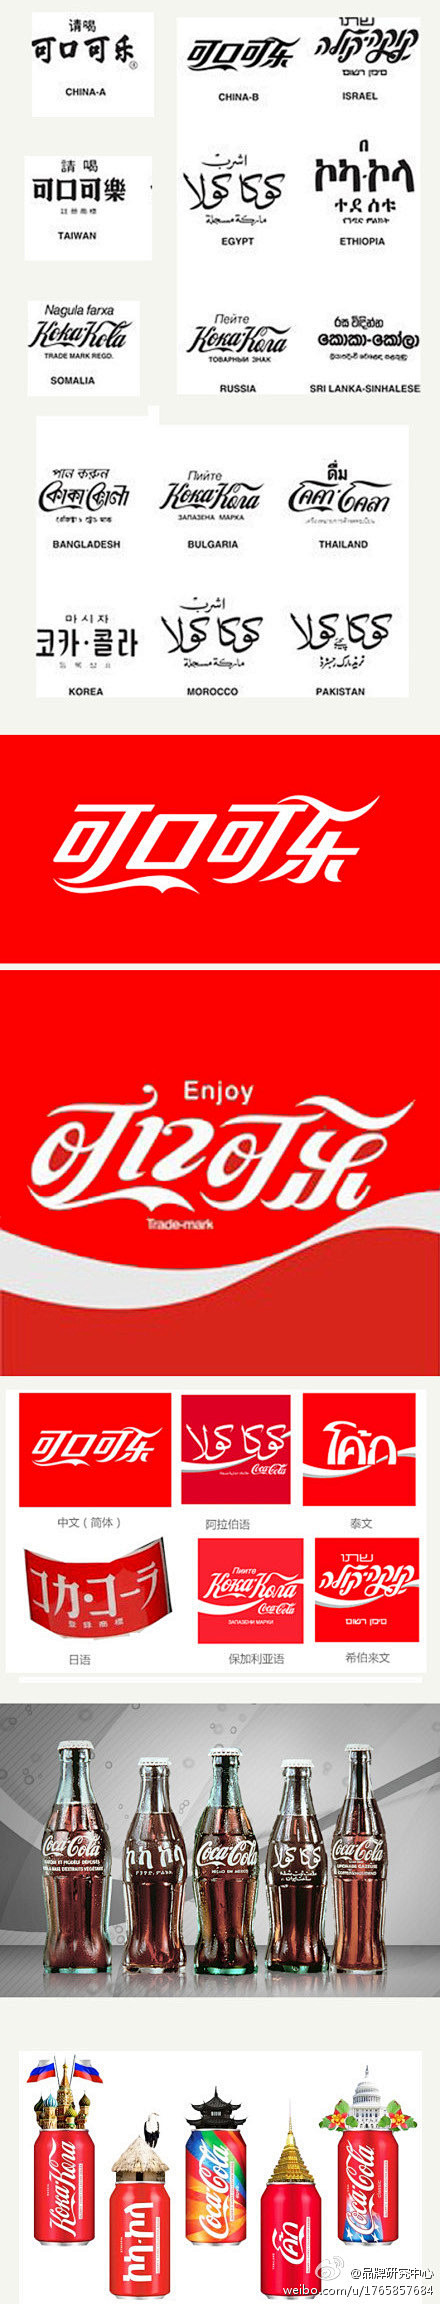 可口可乐多国版本的品牌形象；